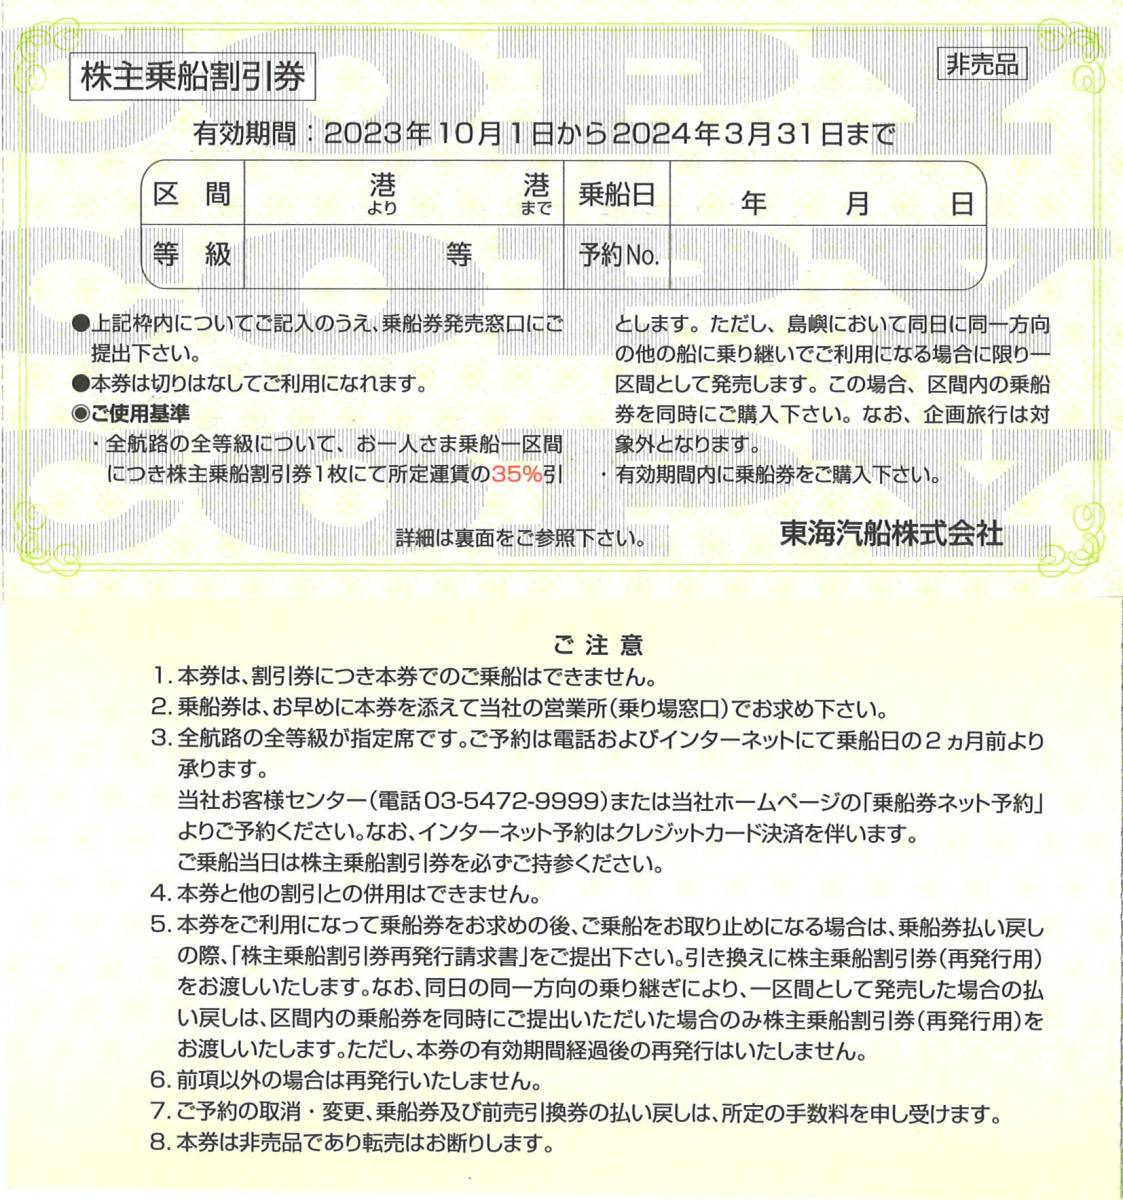 「東海汽船 株主優待」 株主乗船割引券 35%割引券(1枚) 有効期限2024年3月31日_画像1